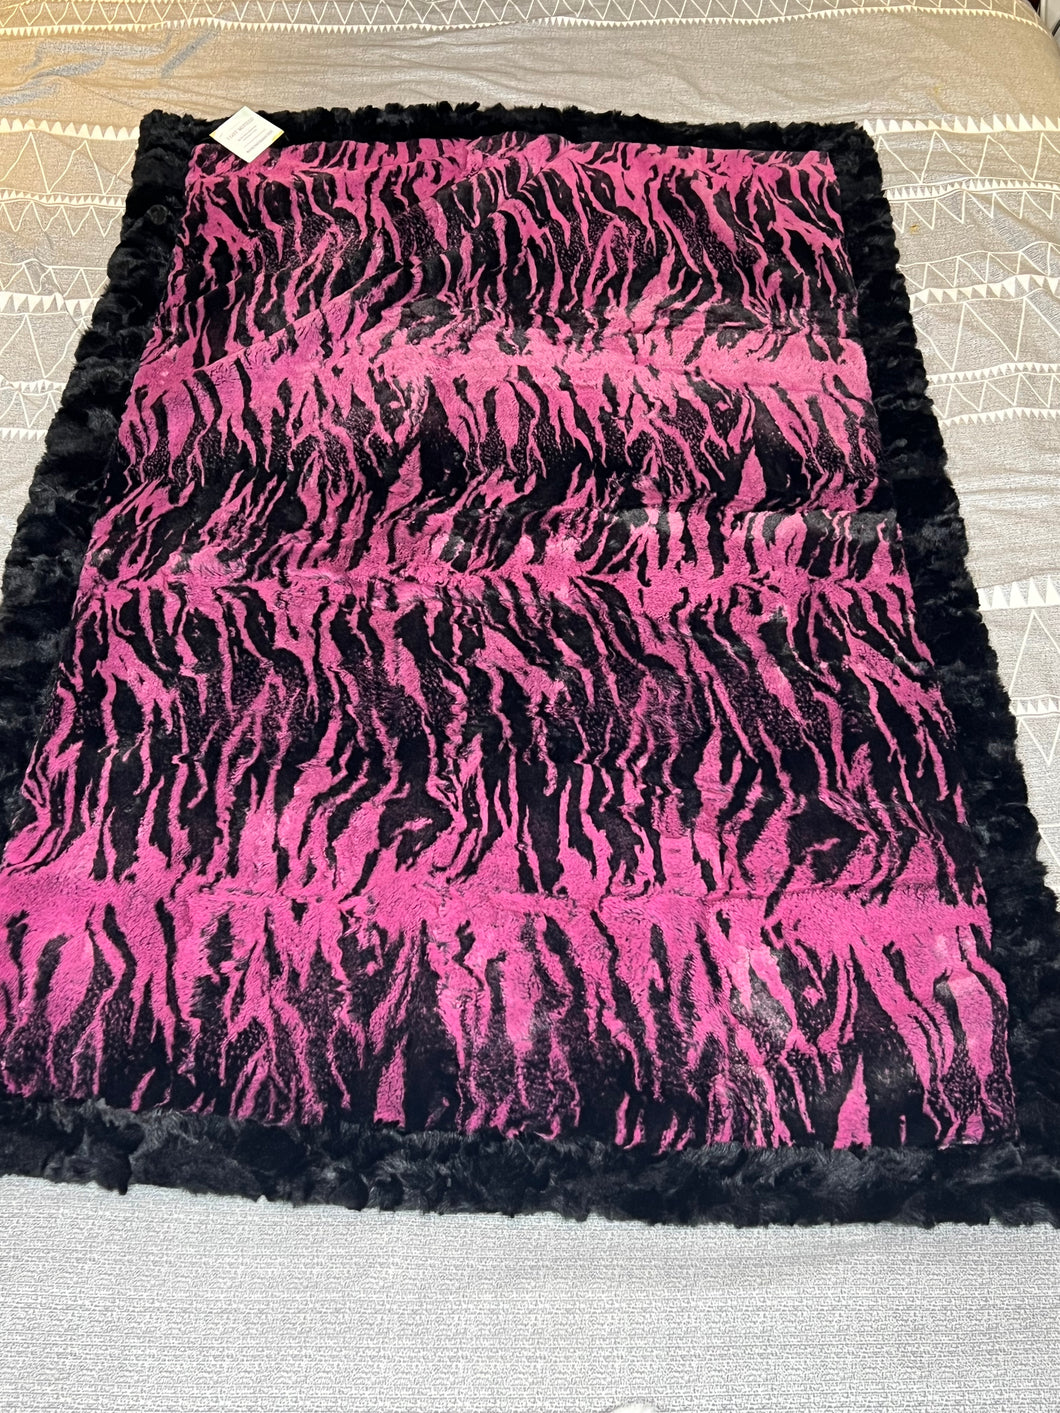 Hot Pink & Black blanket. Black back. Travel Size